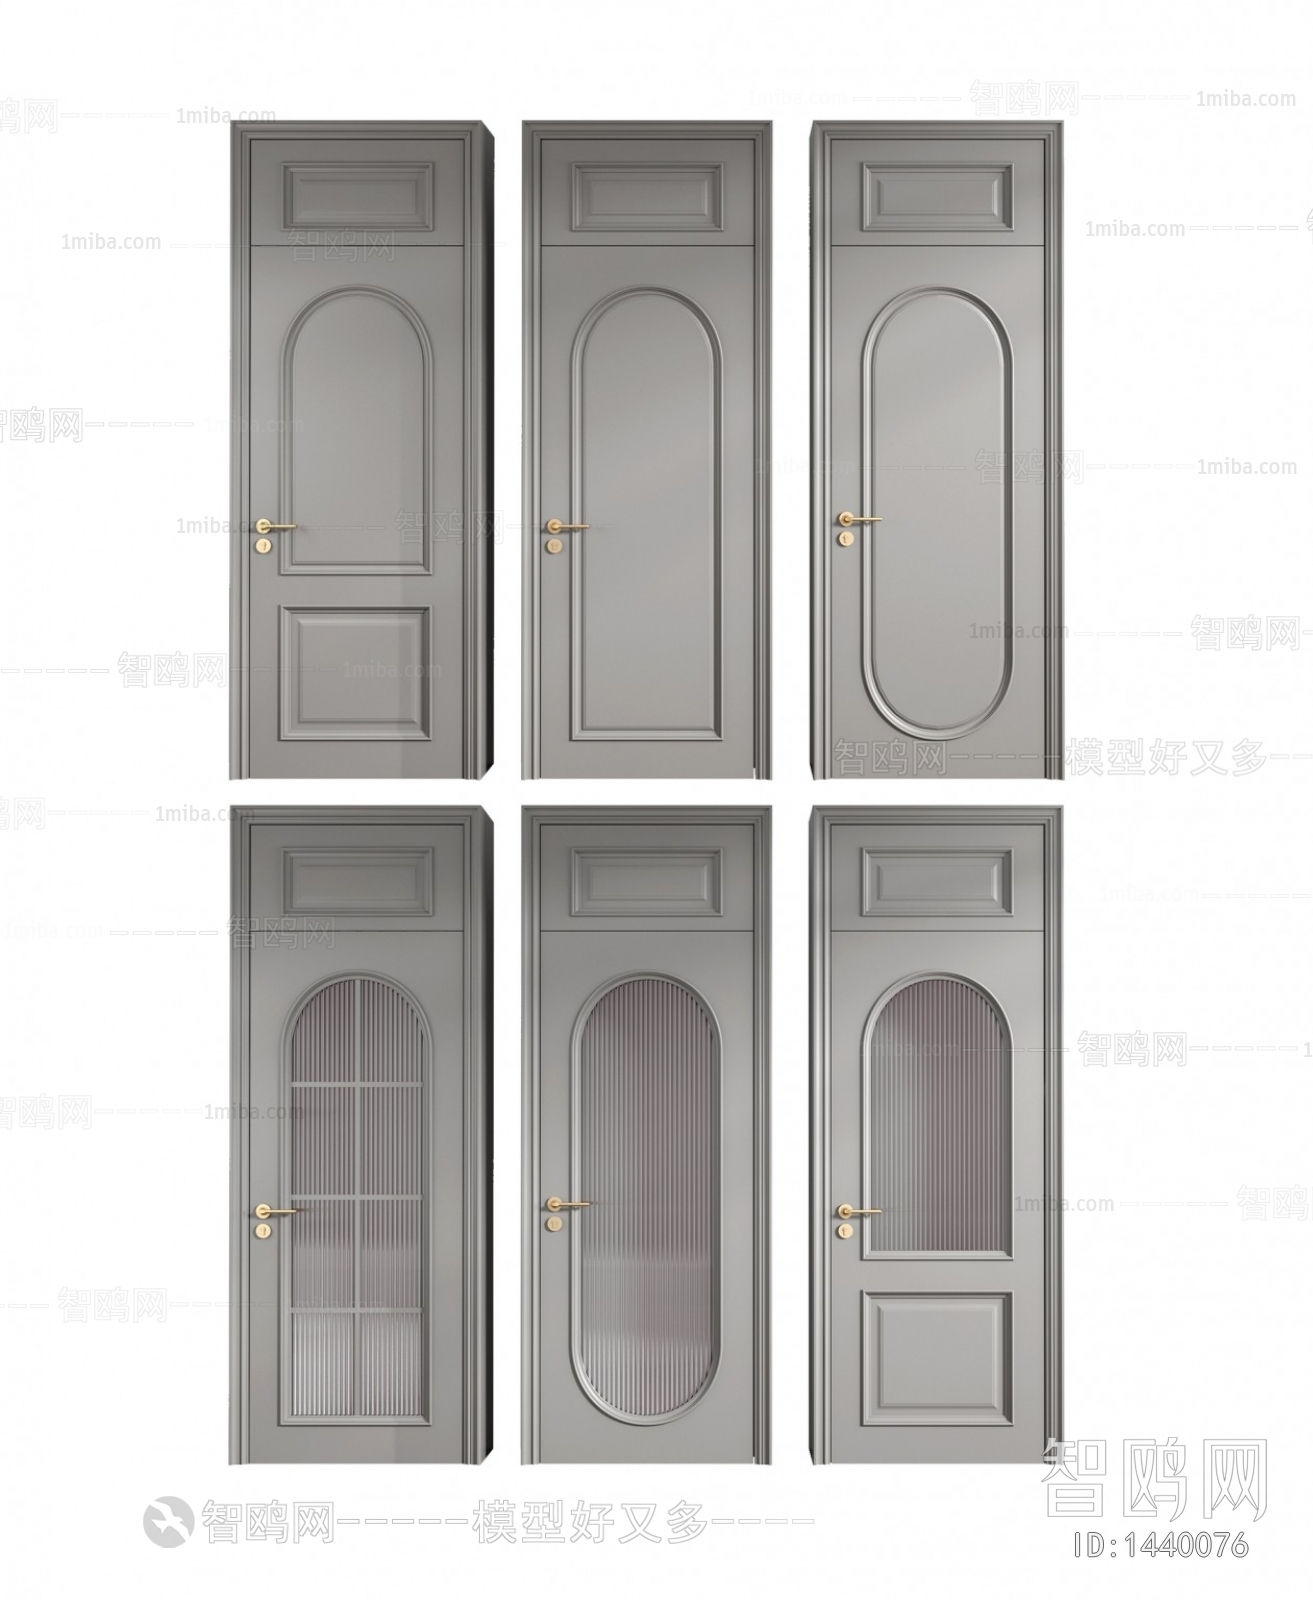 American Style Door